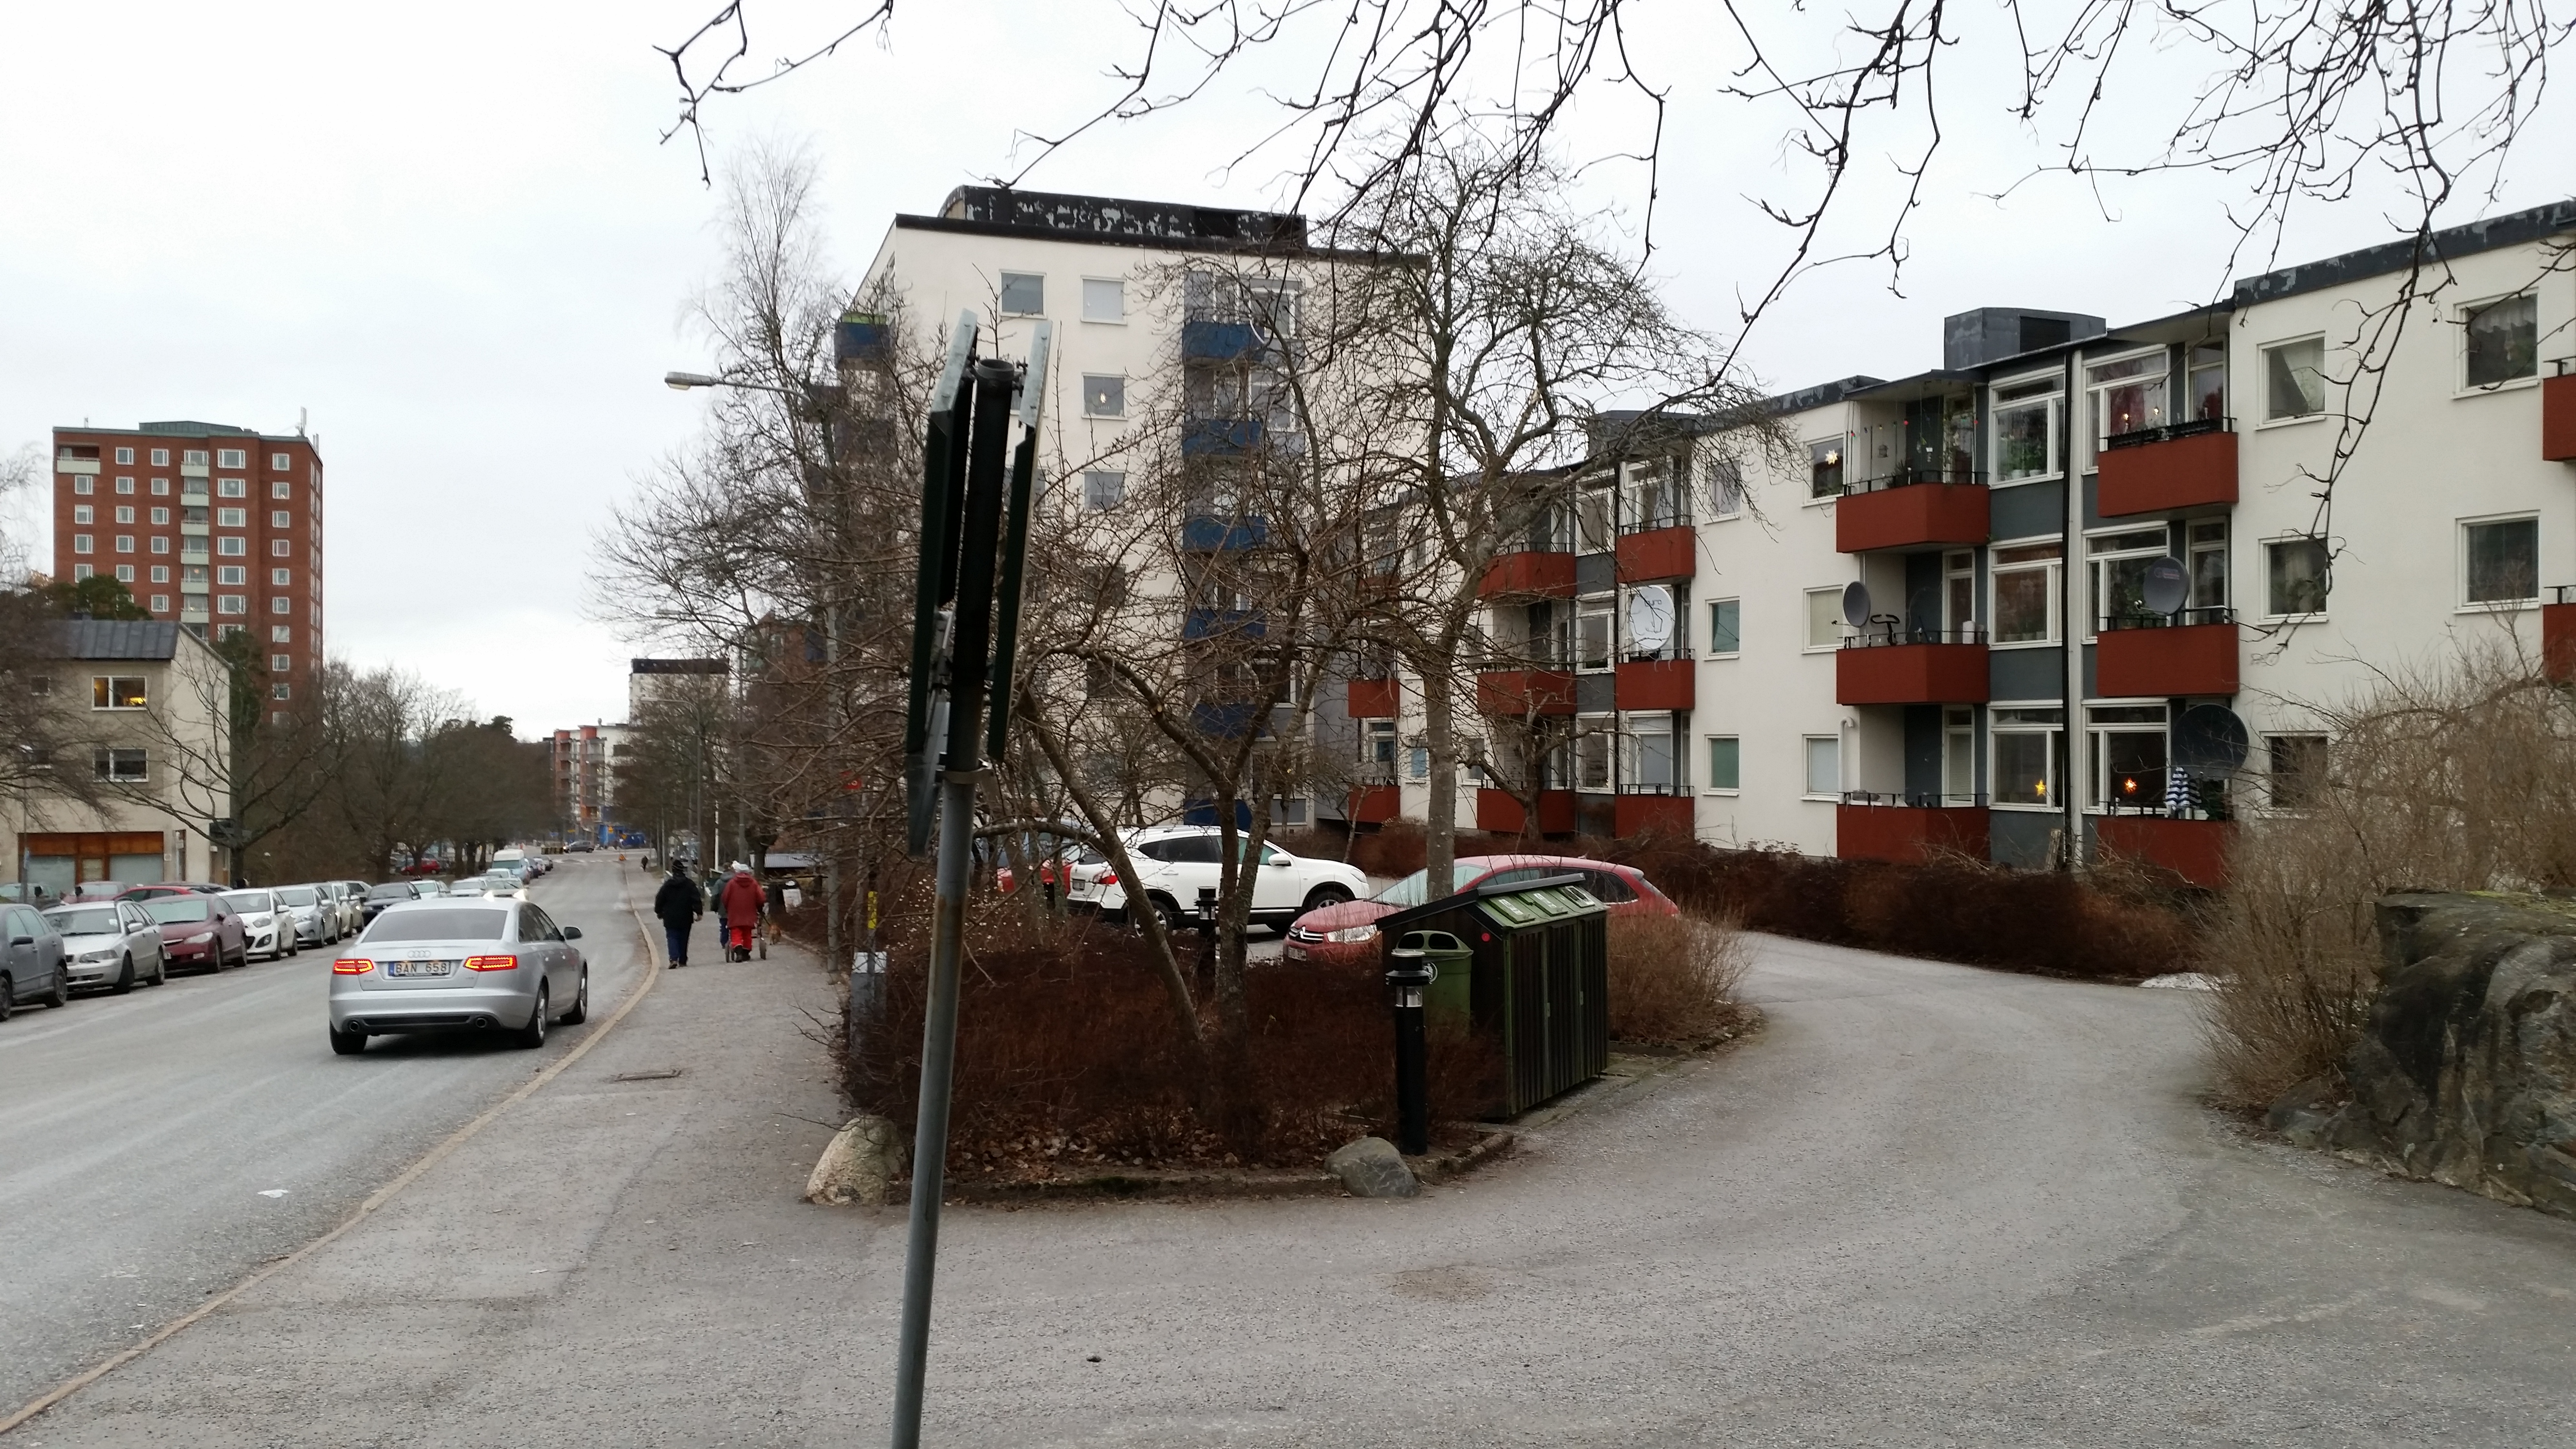 Det blev en promenad i Hässelby idag för att se hur det ser ut där jag växte upp, Det har hänt en hel del på senare år men Aprikosgatan 56 är sig likt.